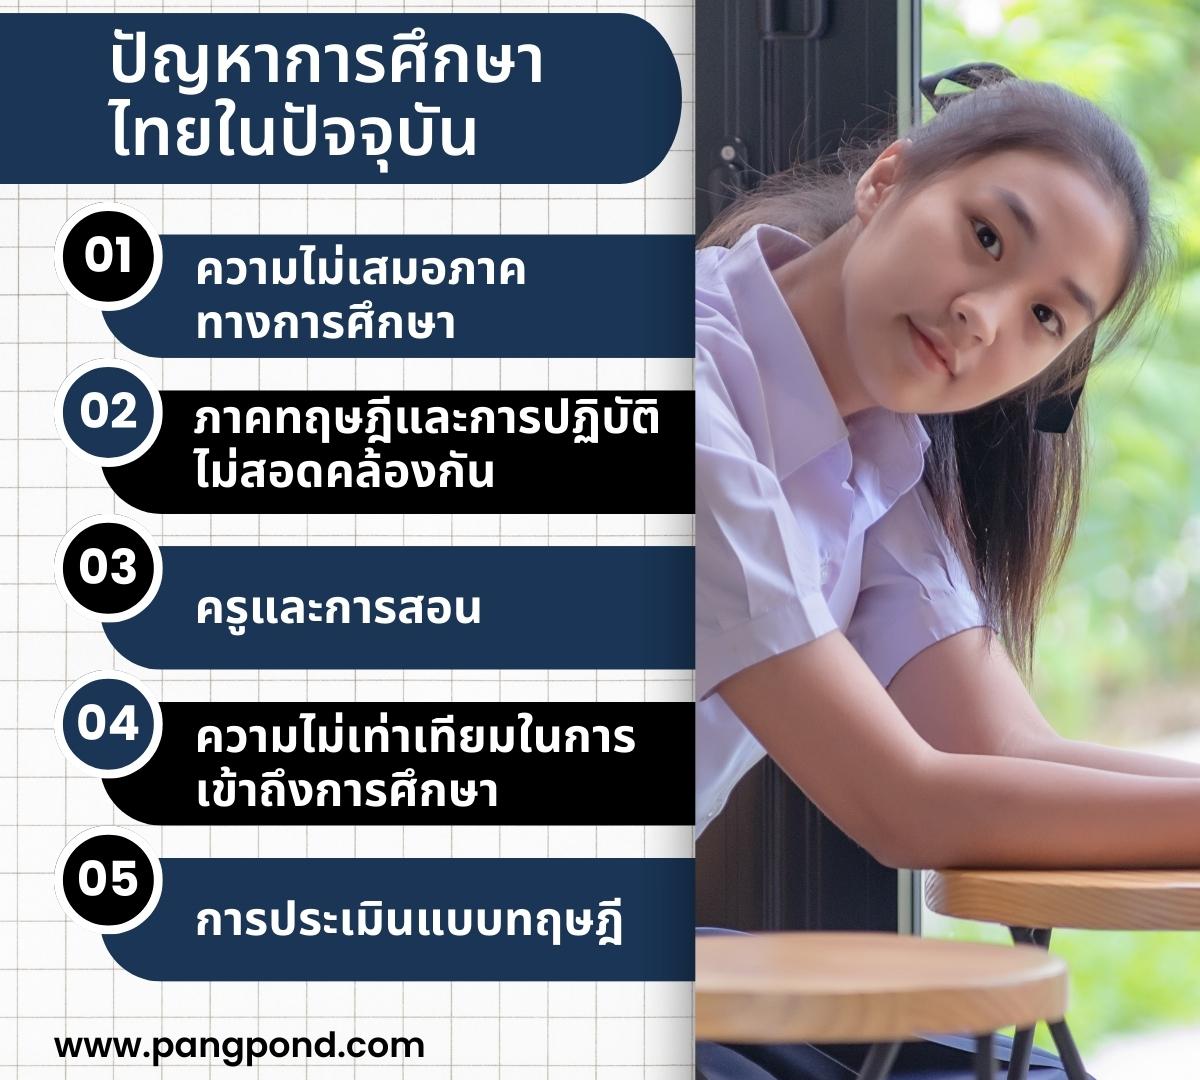 ปัญหาการศึกษาไทยในปัจจุบัน